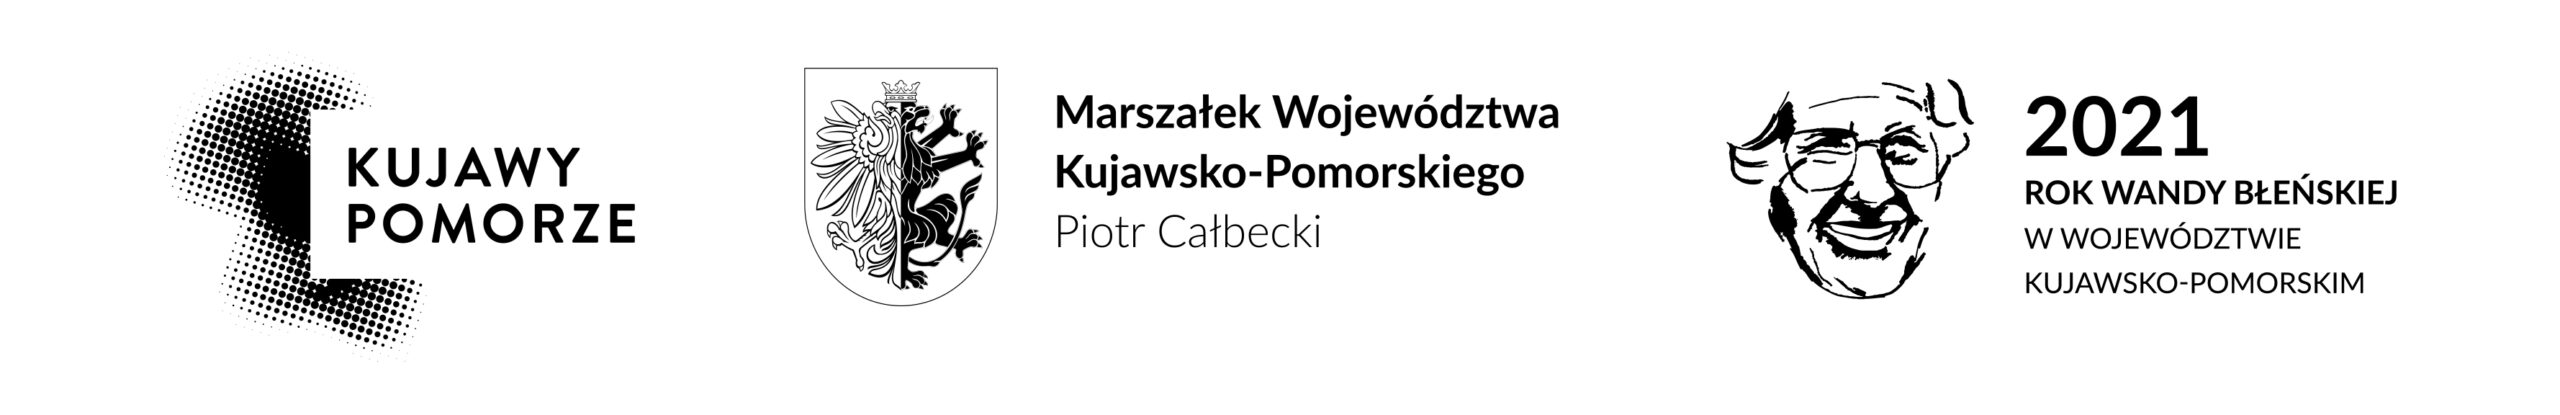 2021 - Rok Wandy Błeńskiej - belka Województwo Kujawsko-Pomorskie